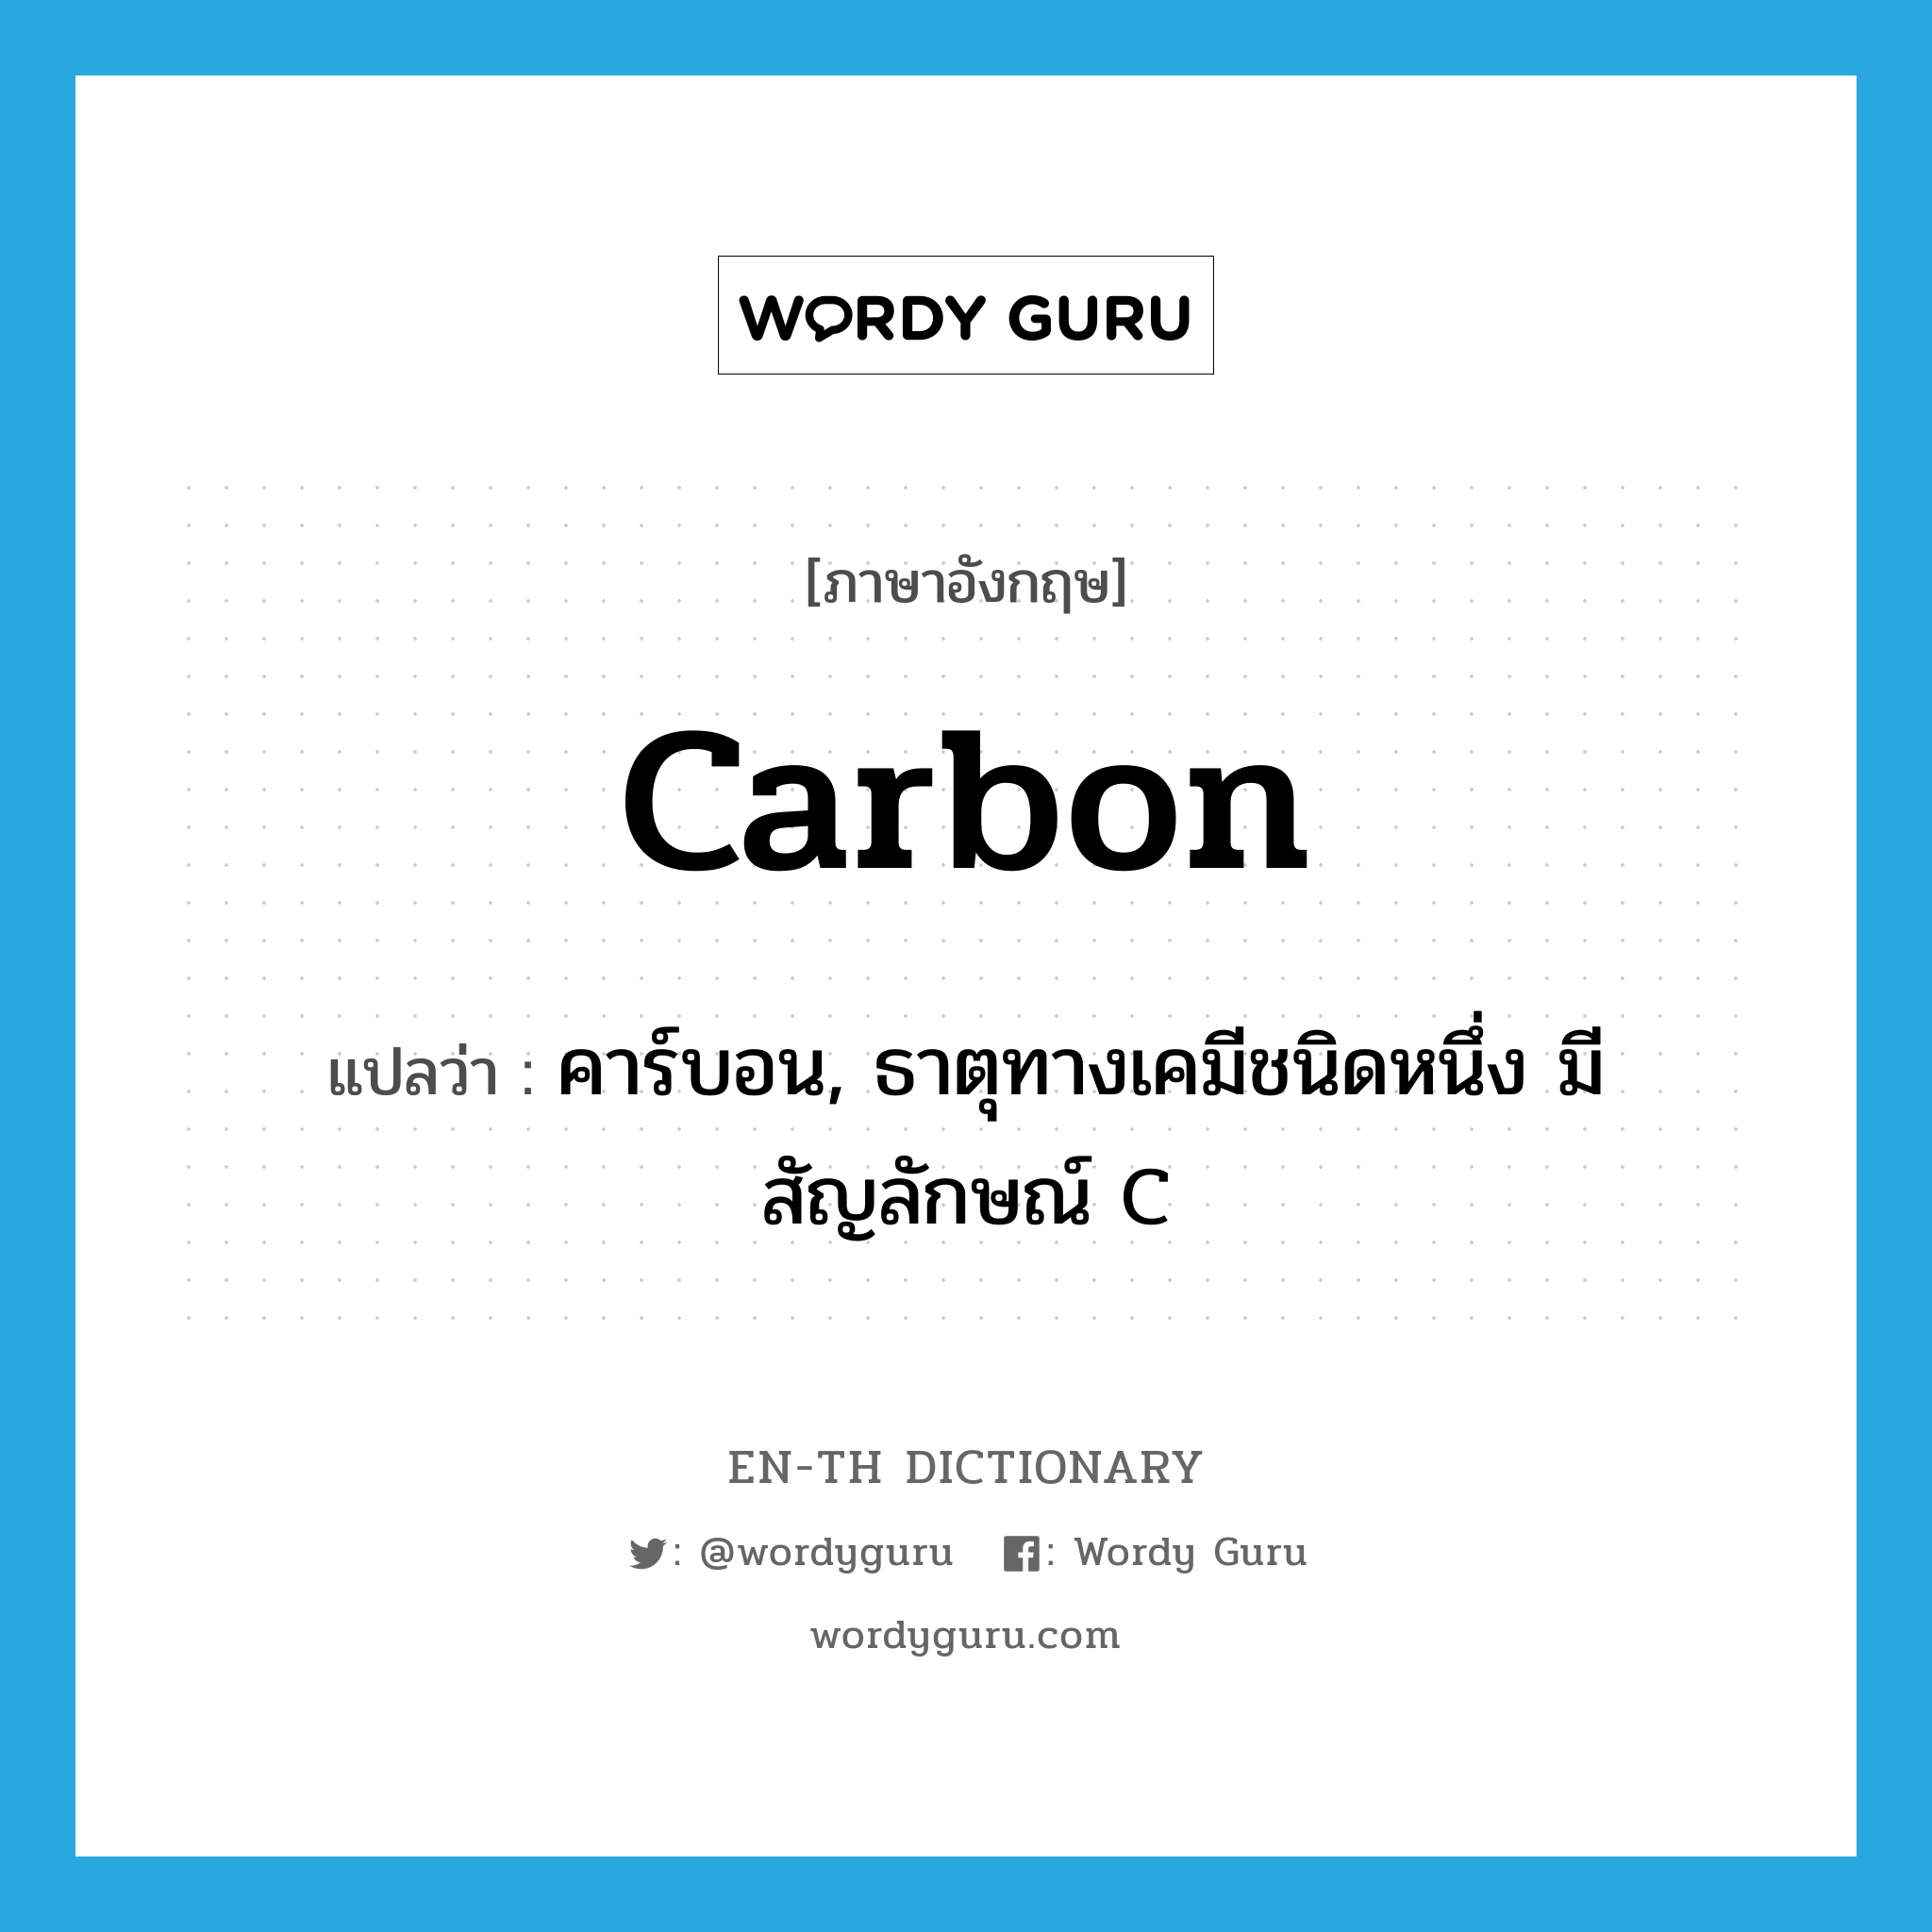 คาร์บอน, ธาตุทางเคมีชนิดหนึ่ง มีสัญลักษณ์ C